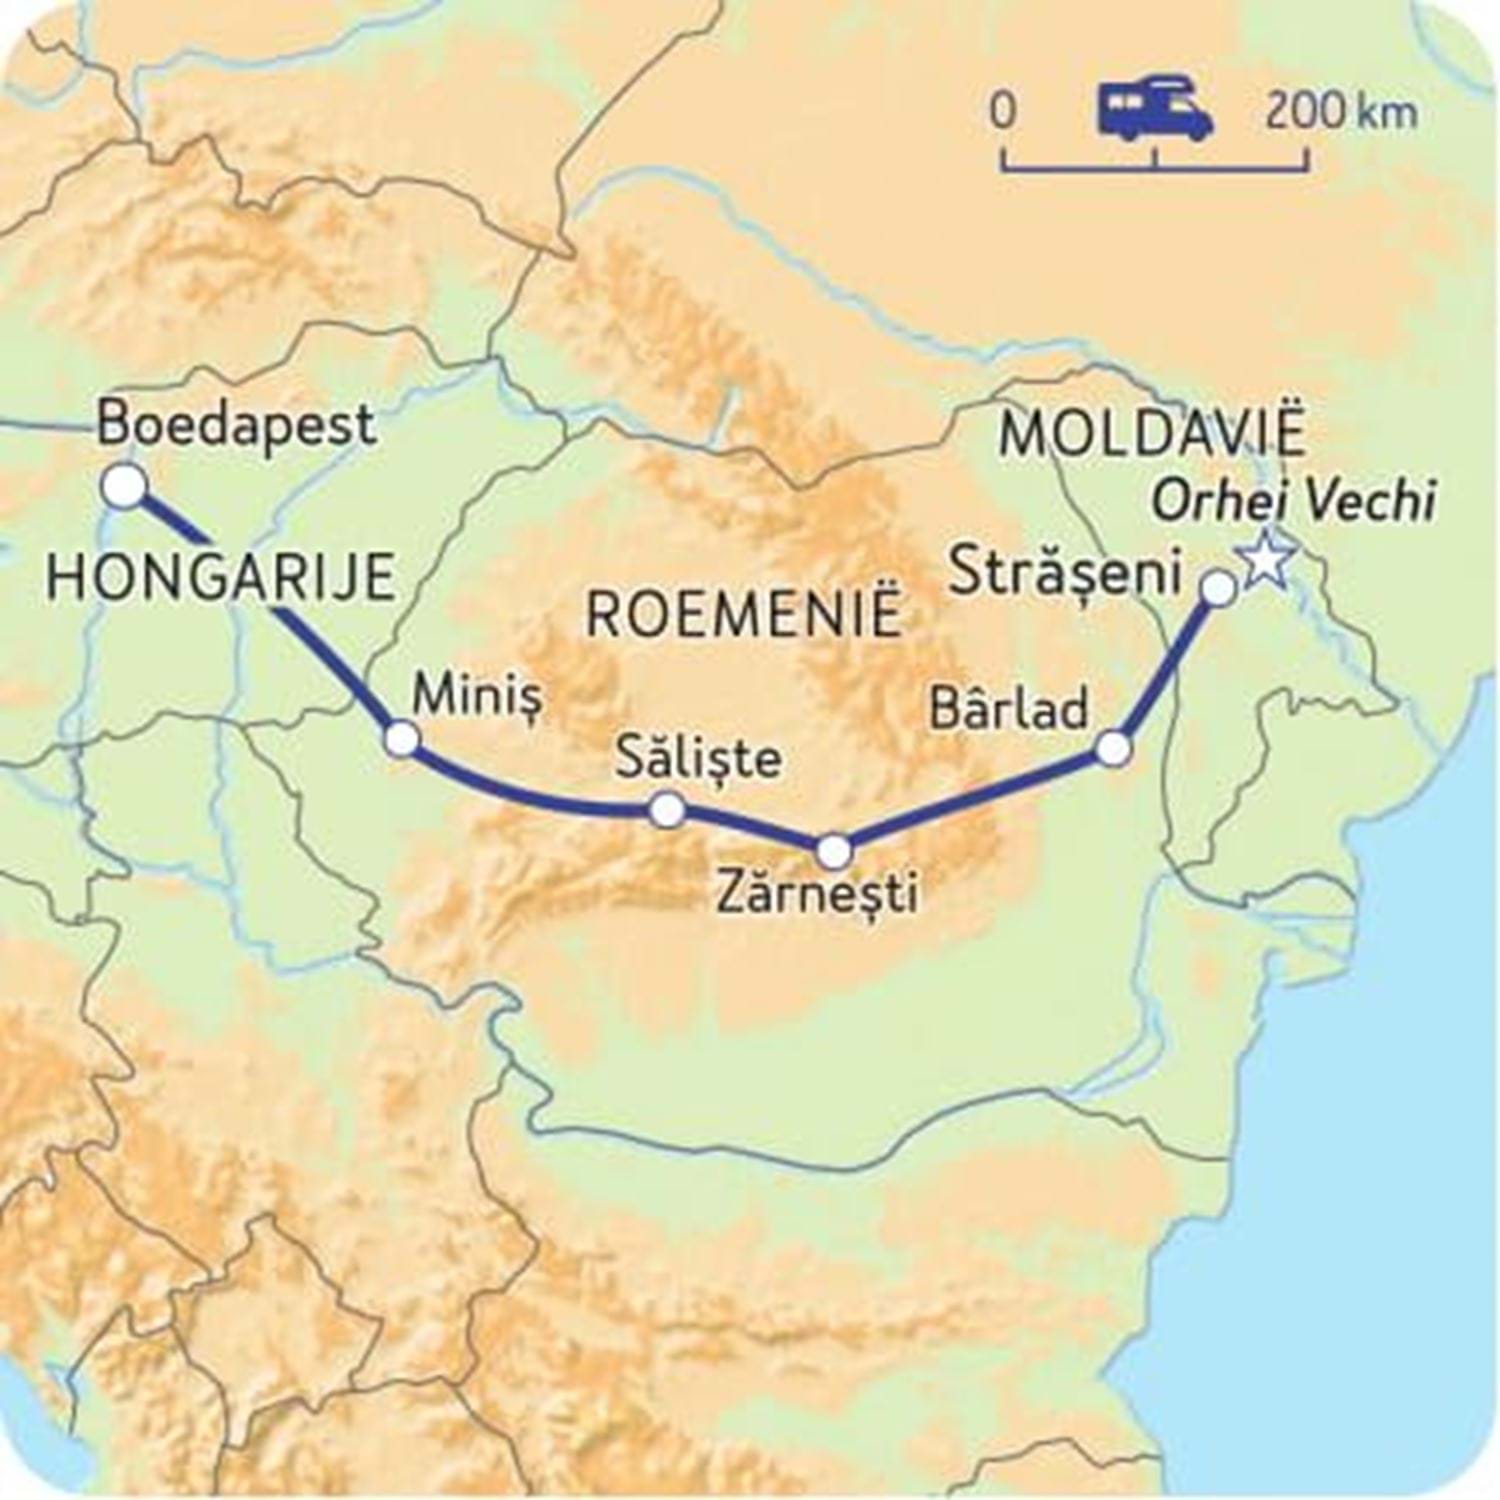 De route van de groepsreis van Boedapest, Hongarije naar Străşeni, Moldavië